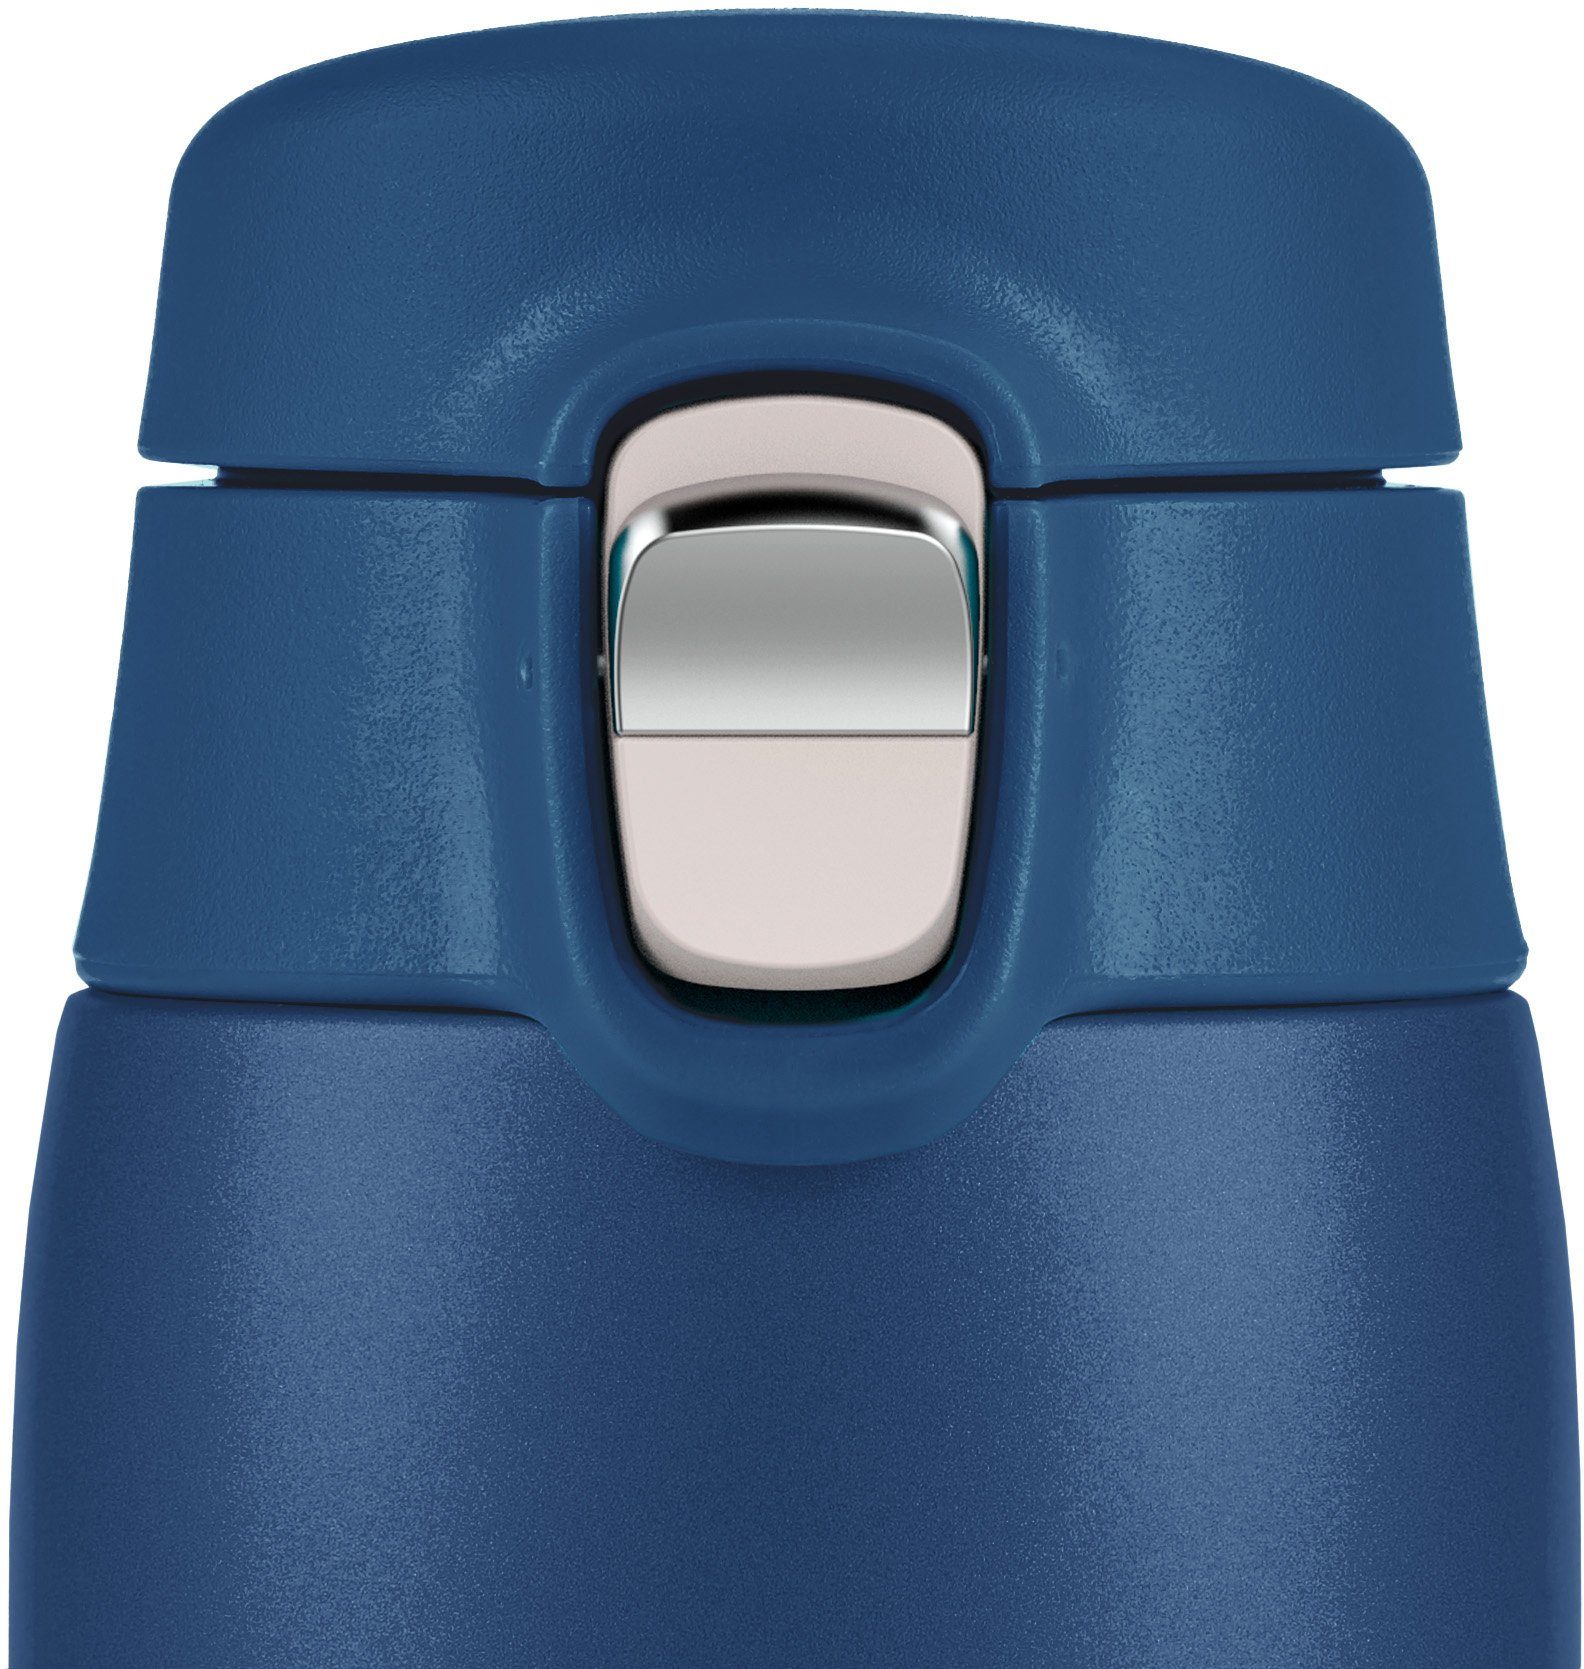 8h Edelstahl, 0,4L, 100% Travel Thermobecher Mug warm/16h Kunststoff, Edelstahl, dicht, Light, kalt Emsa